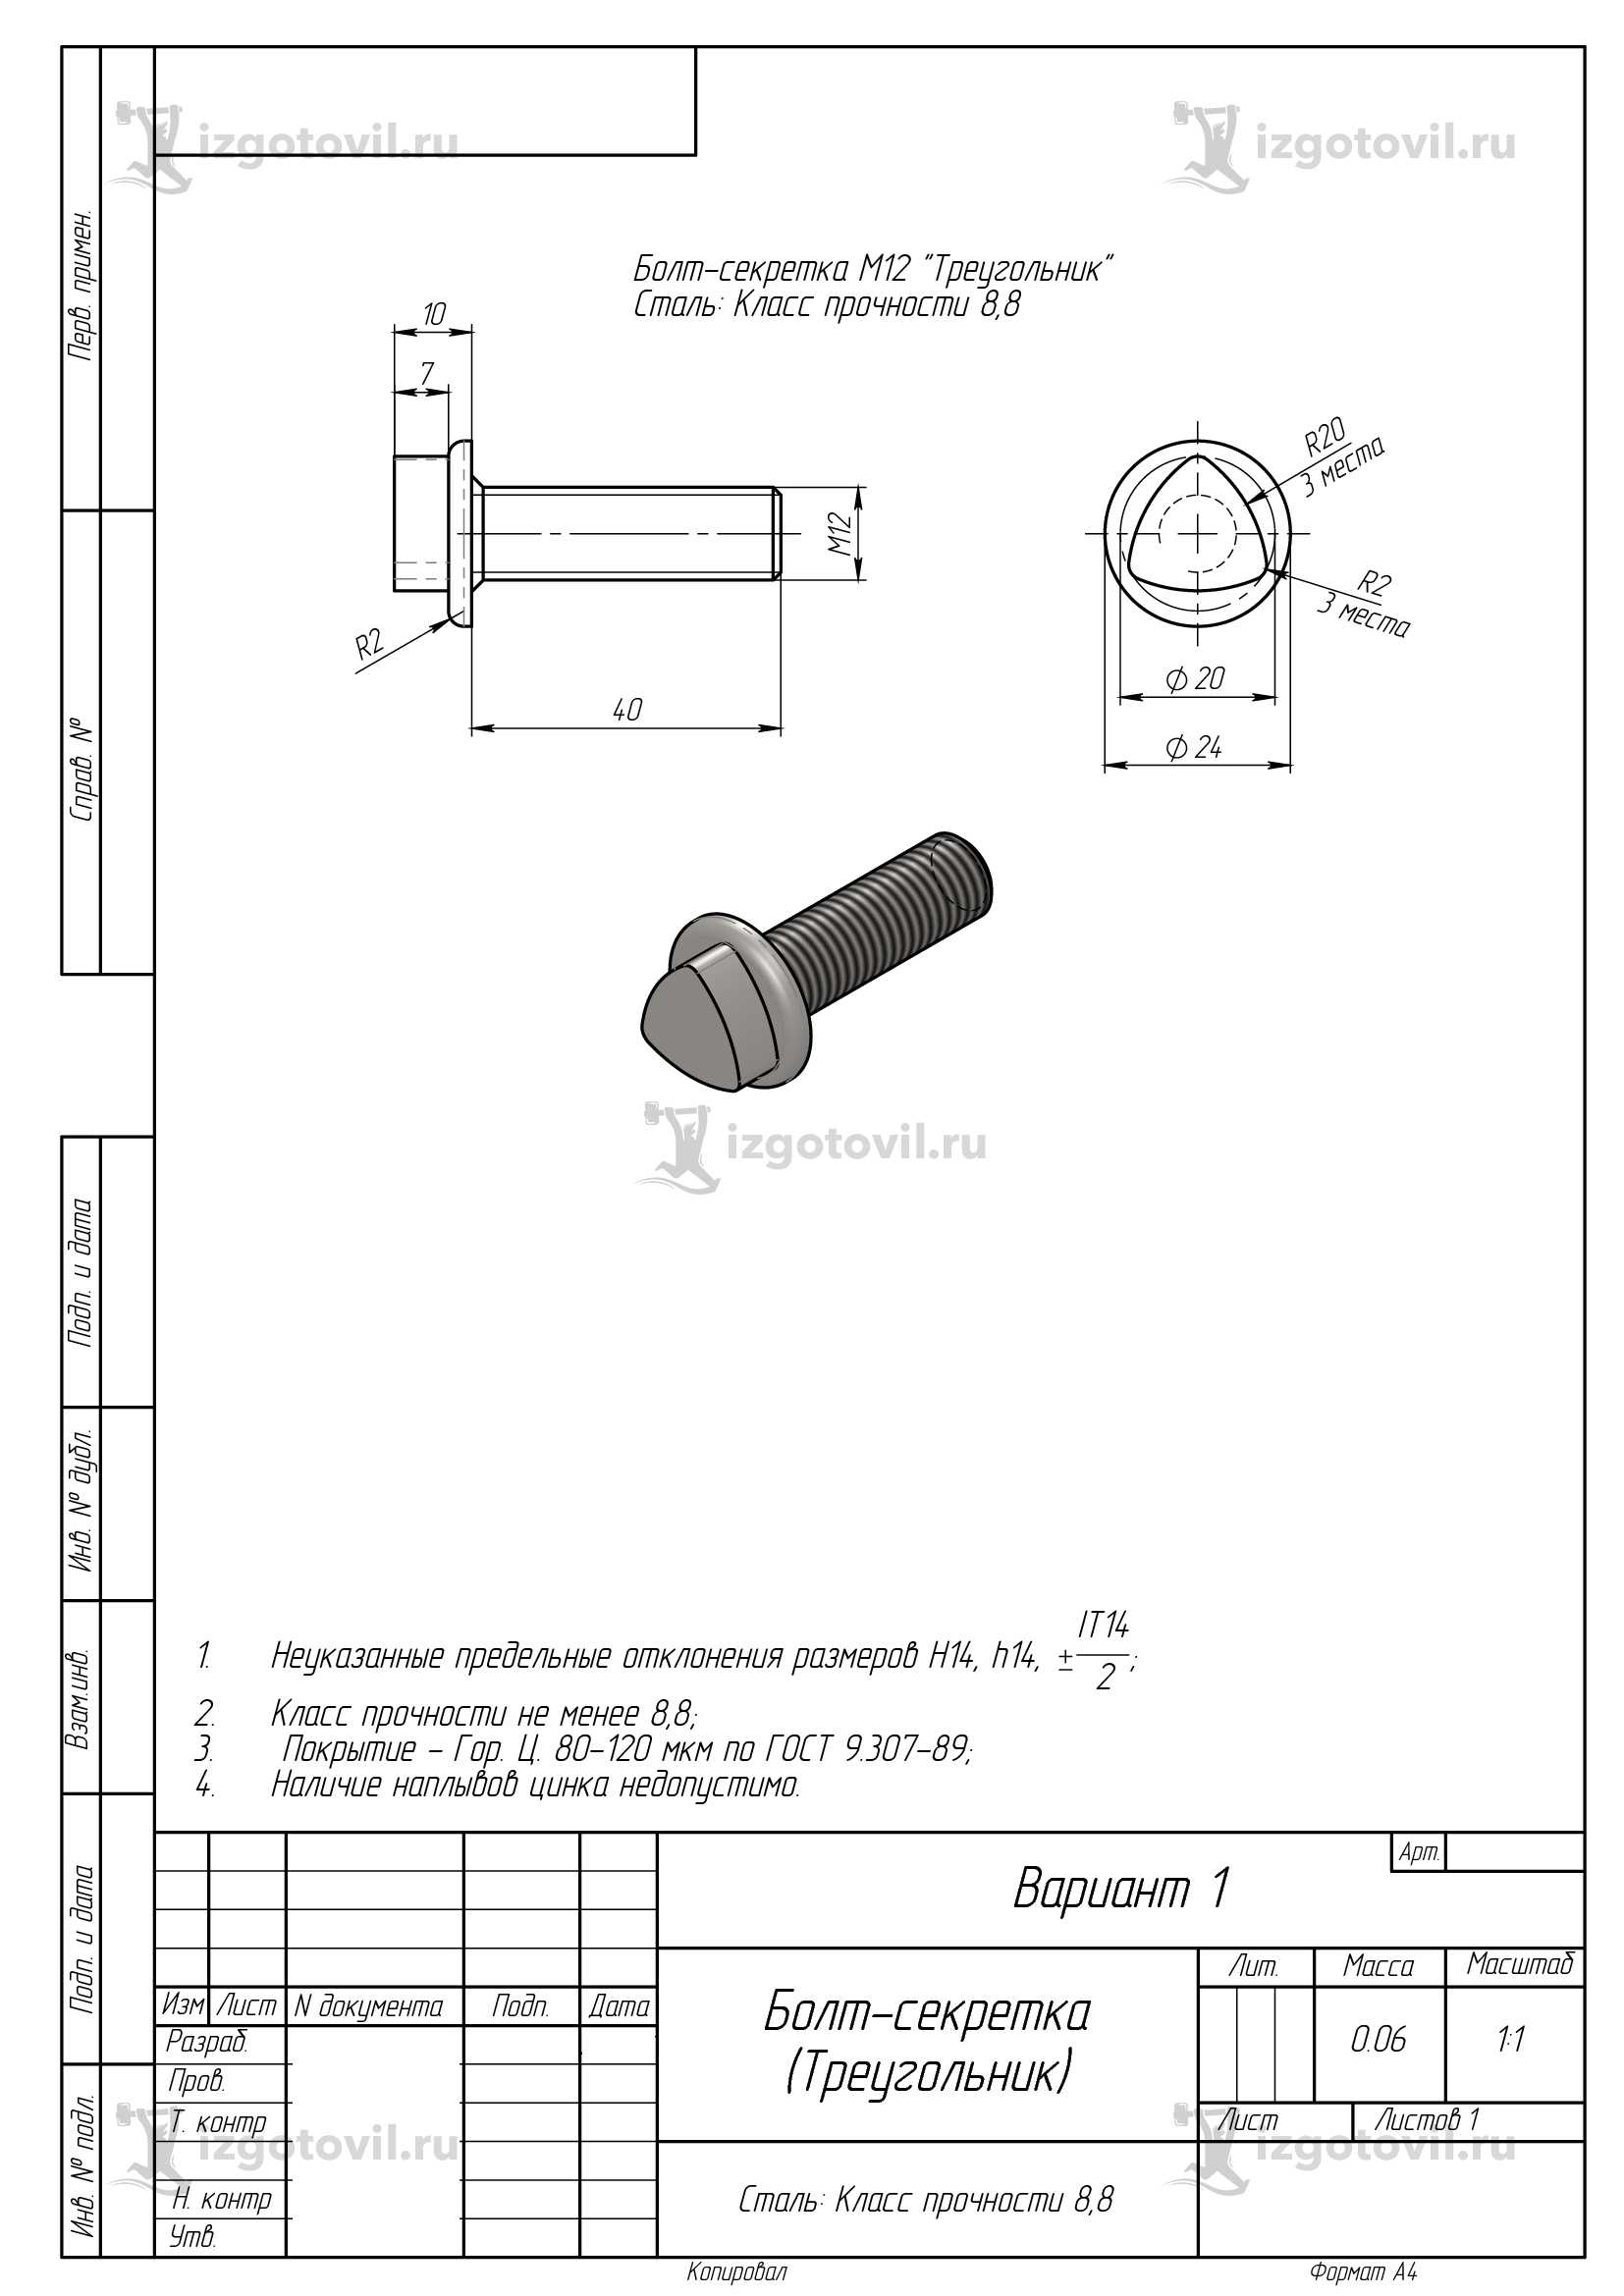 Токарно-фрезерная обработка: изготовление болтов и головок ключа под болт